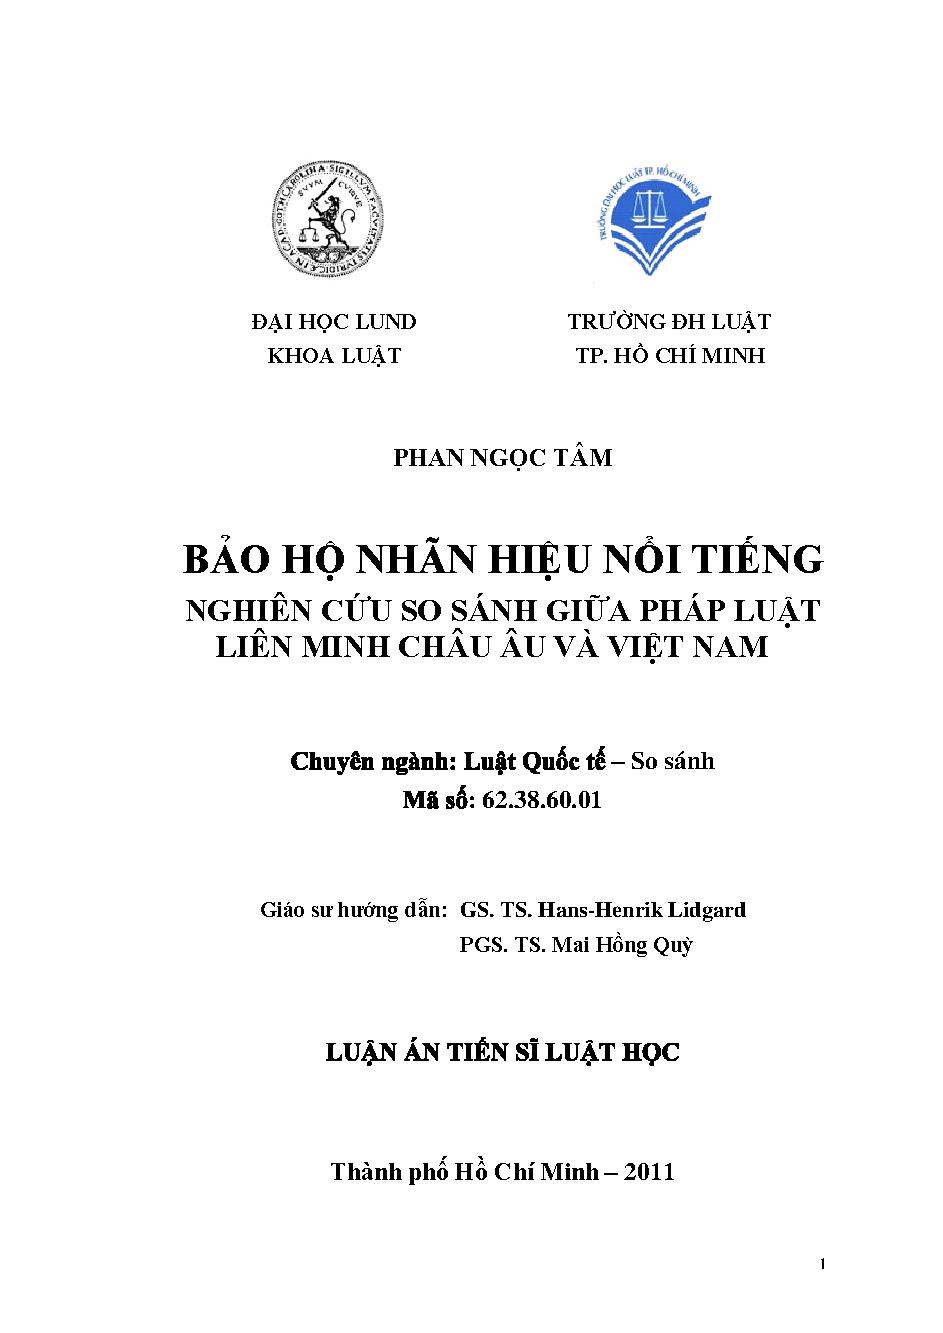 Bảo hộ nhãn hiệu nổi tiếng - nghiên cứu so sánh giữa pháp luật liên minh Châu Âu và Việt Nam